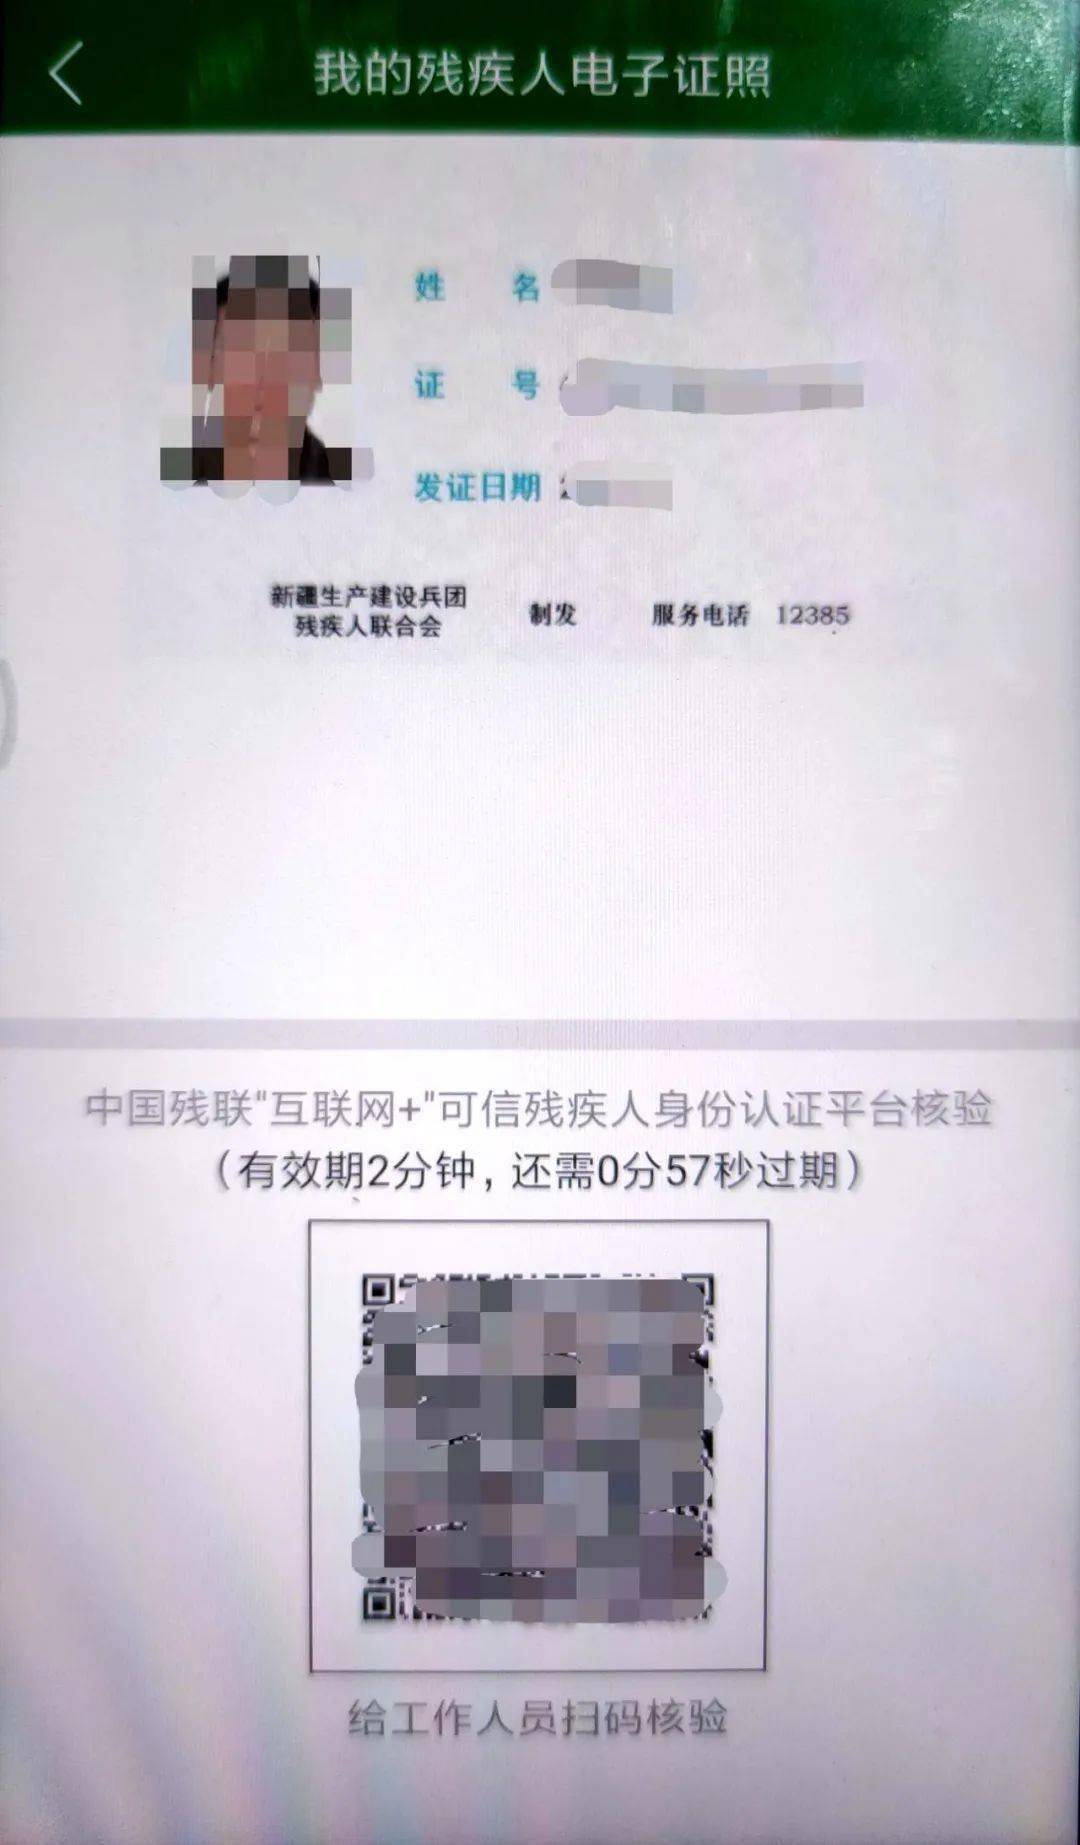 8月起全国统一换发《残疾军人证》等证件-新闻发布-中华人民共和国退役军人事务部